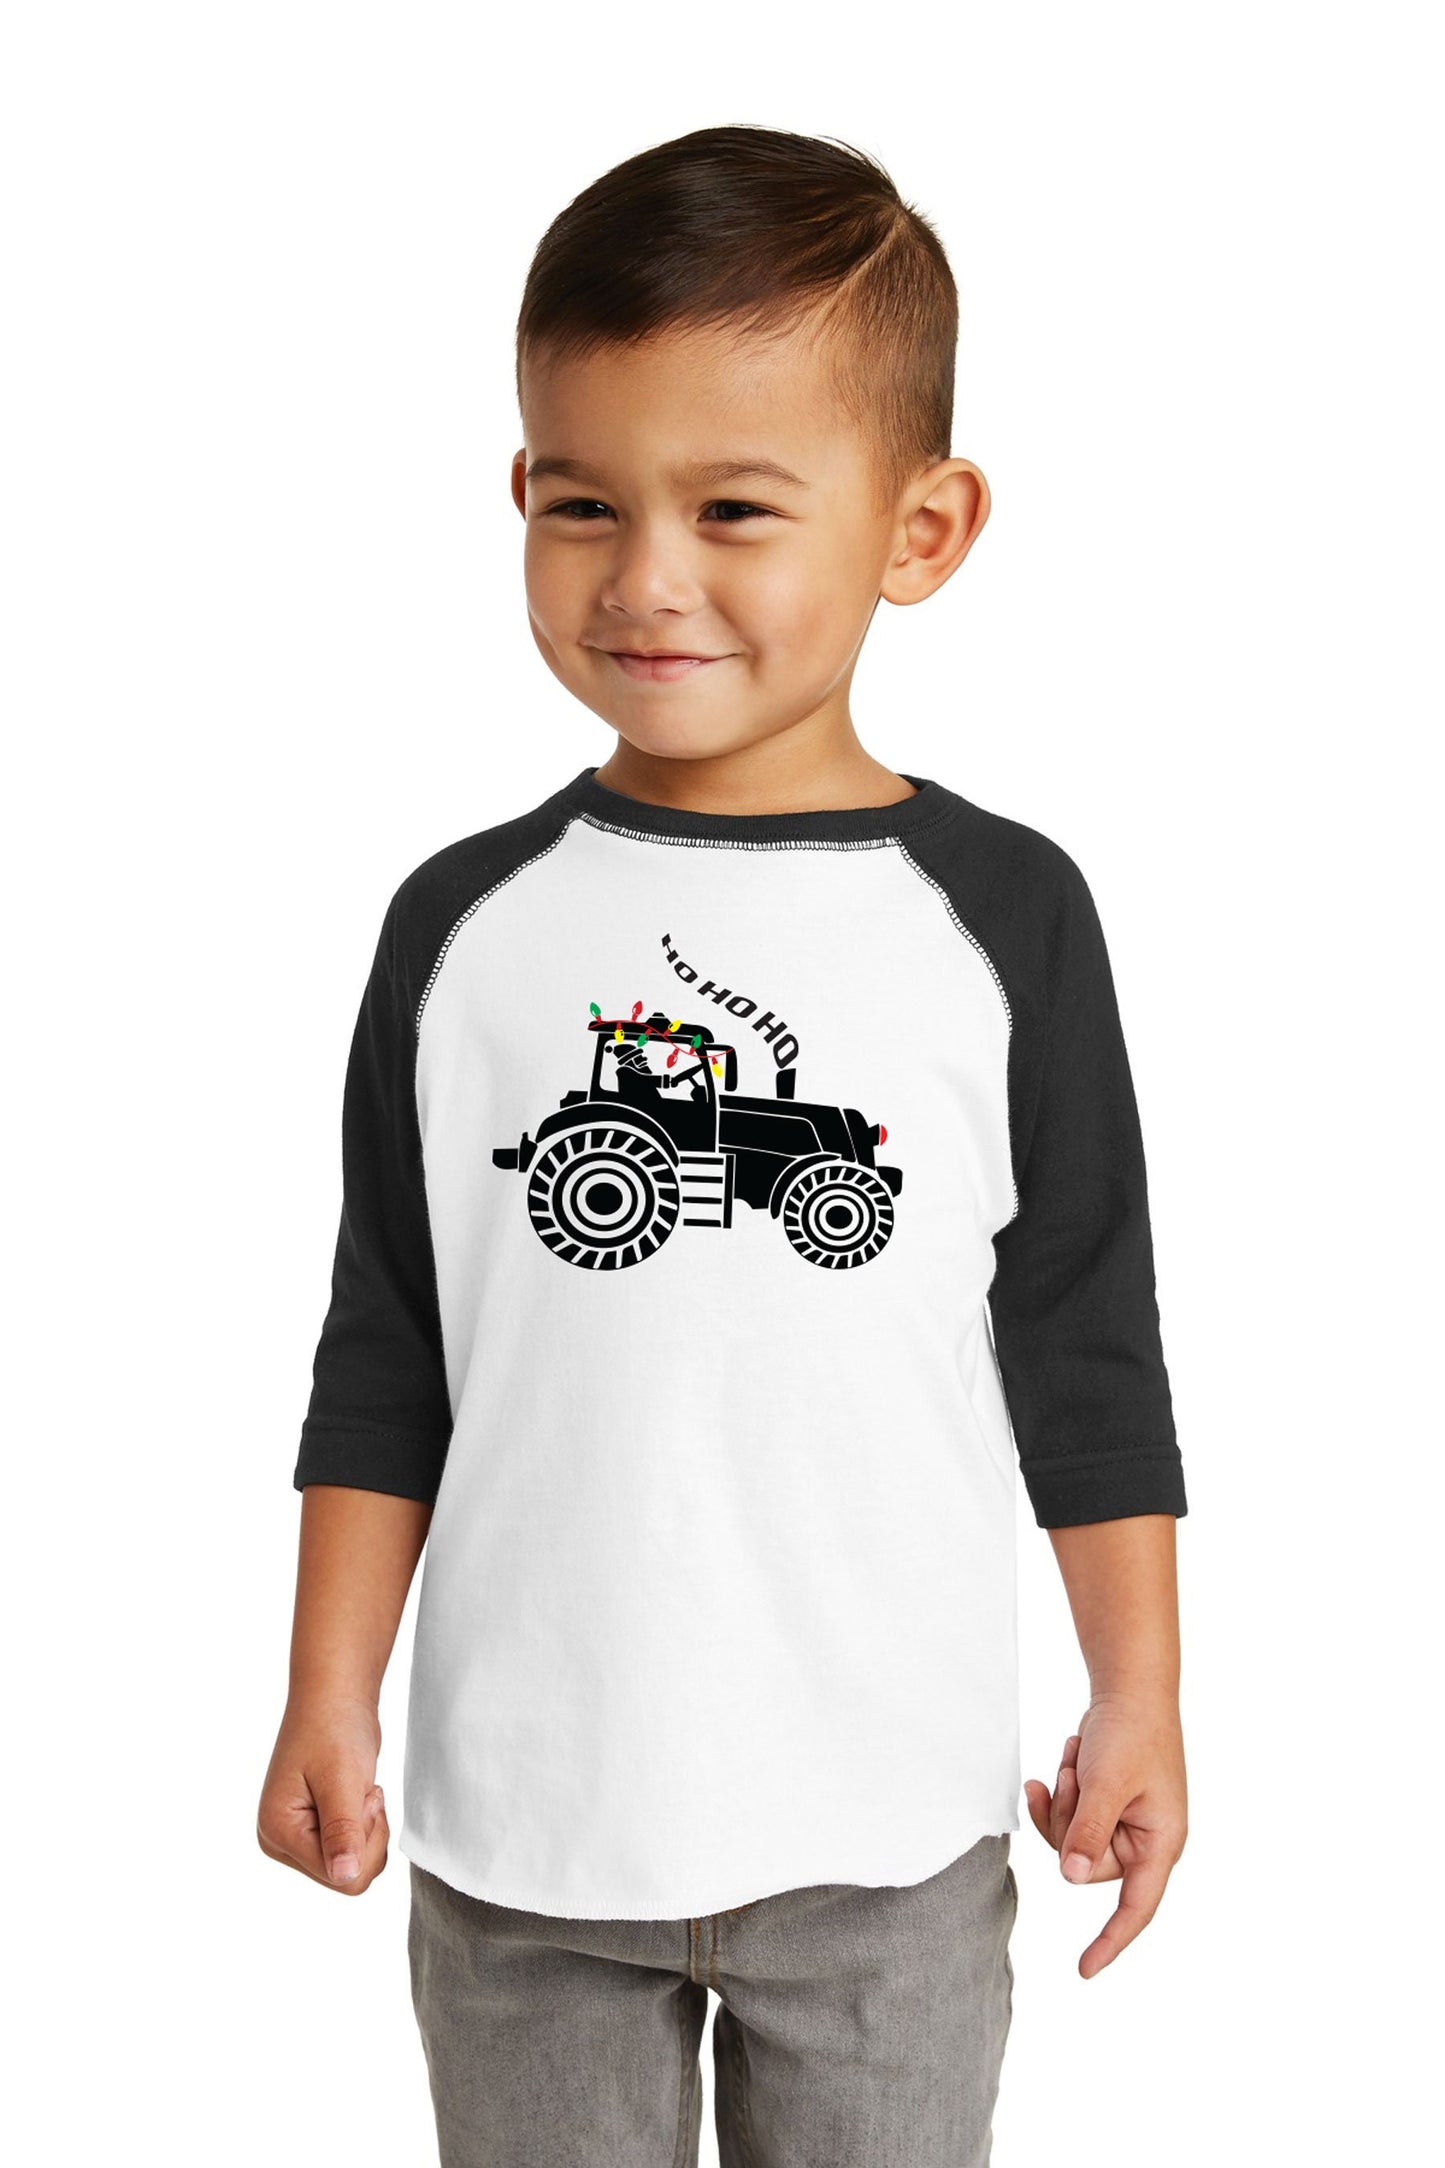 Christmas Tractor boys christmas shirt